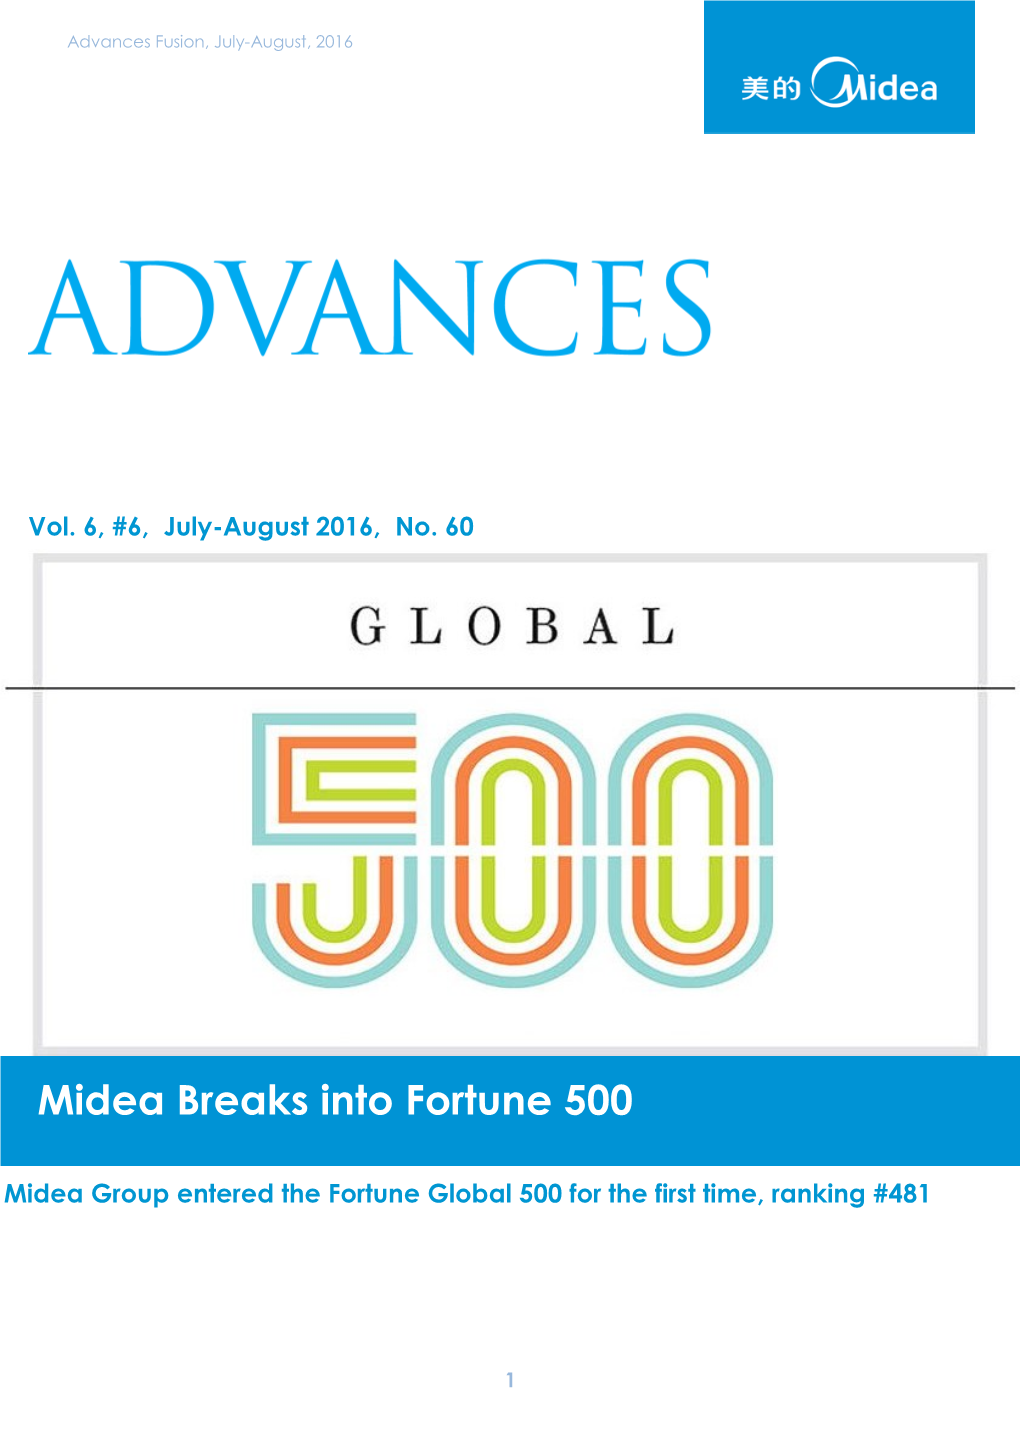 Midea Breaks Into Fortune 500